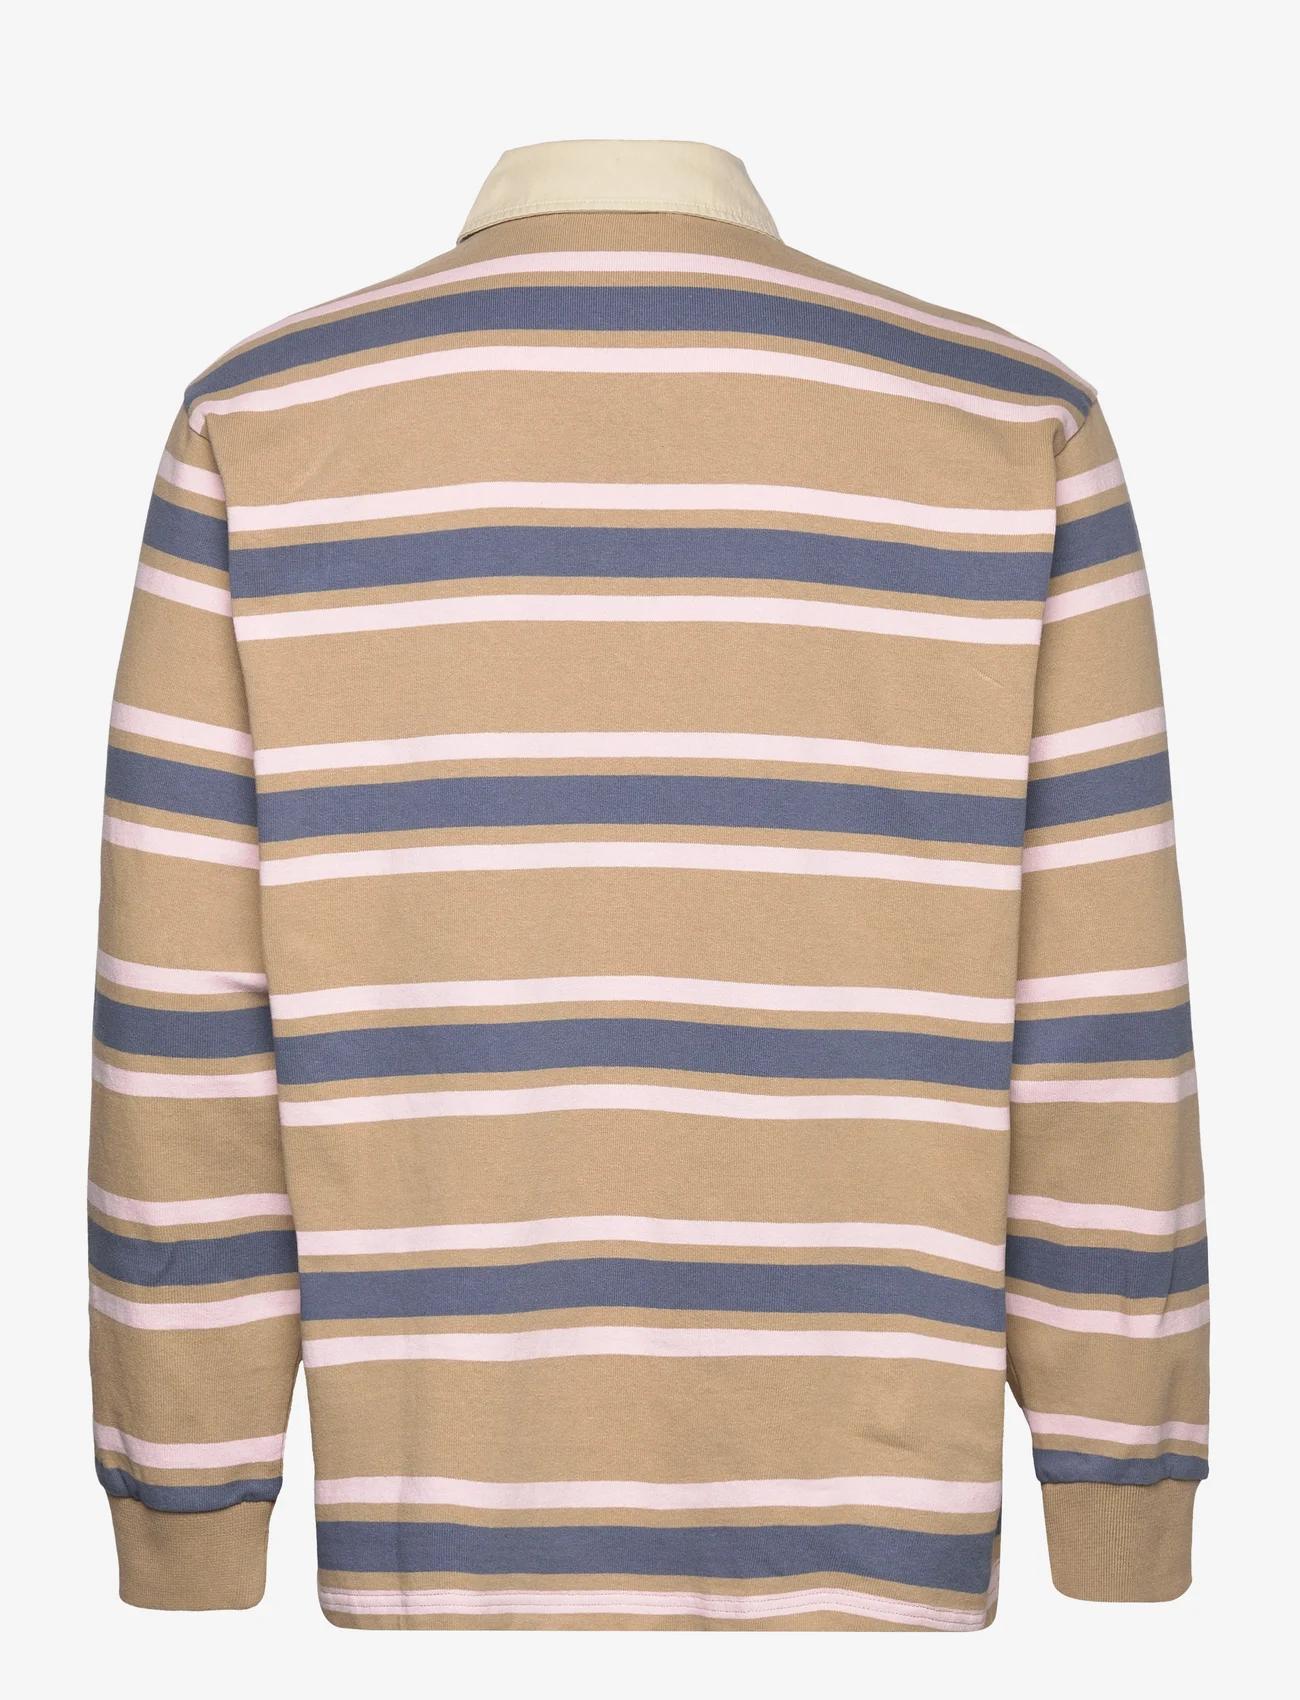 Wood Wood - Brodie striped rugby shirt - langærmede poloer - warm sand - 1